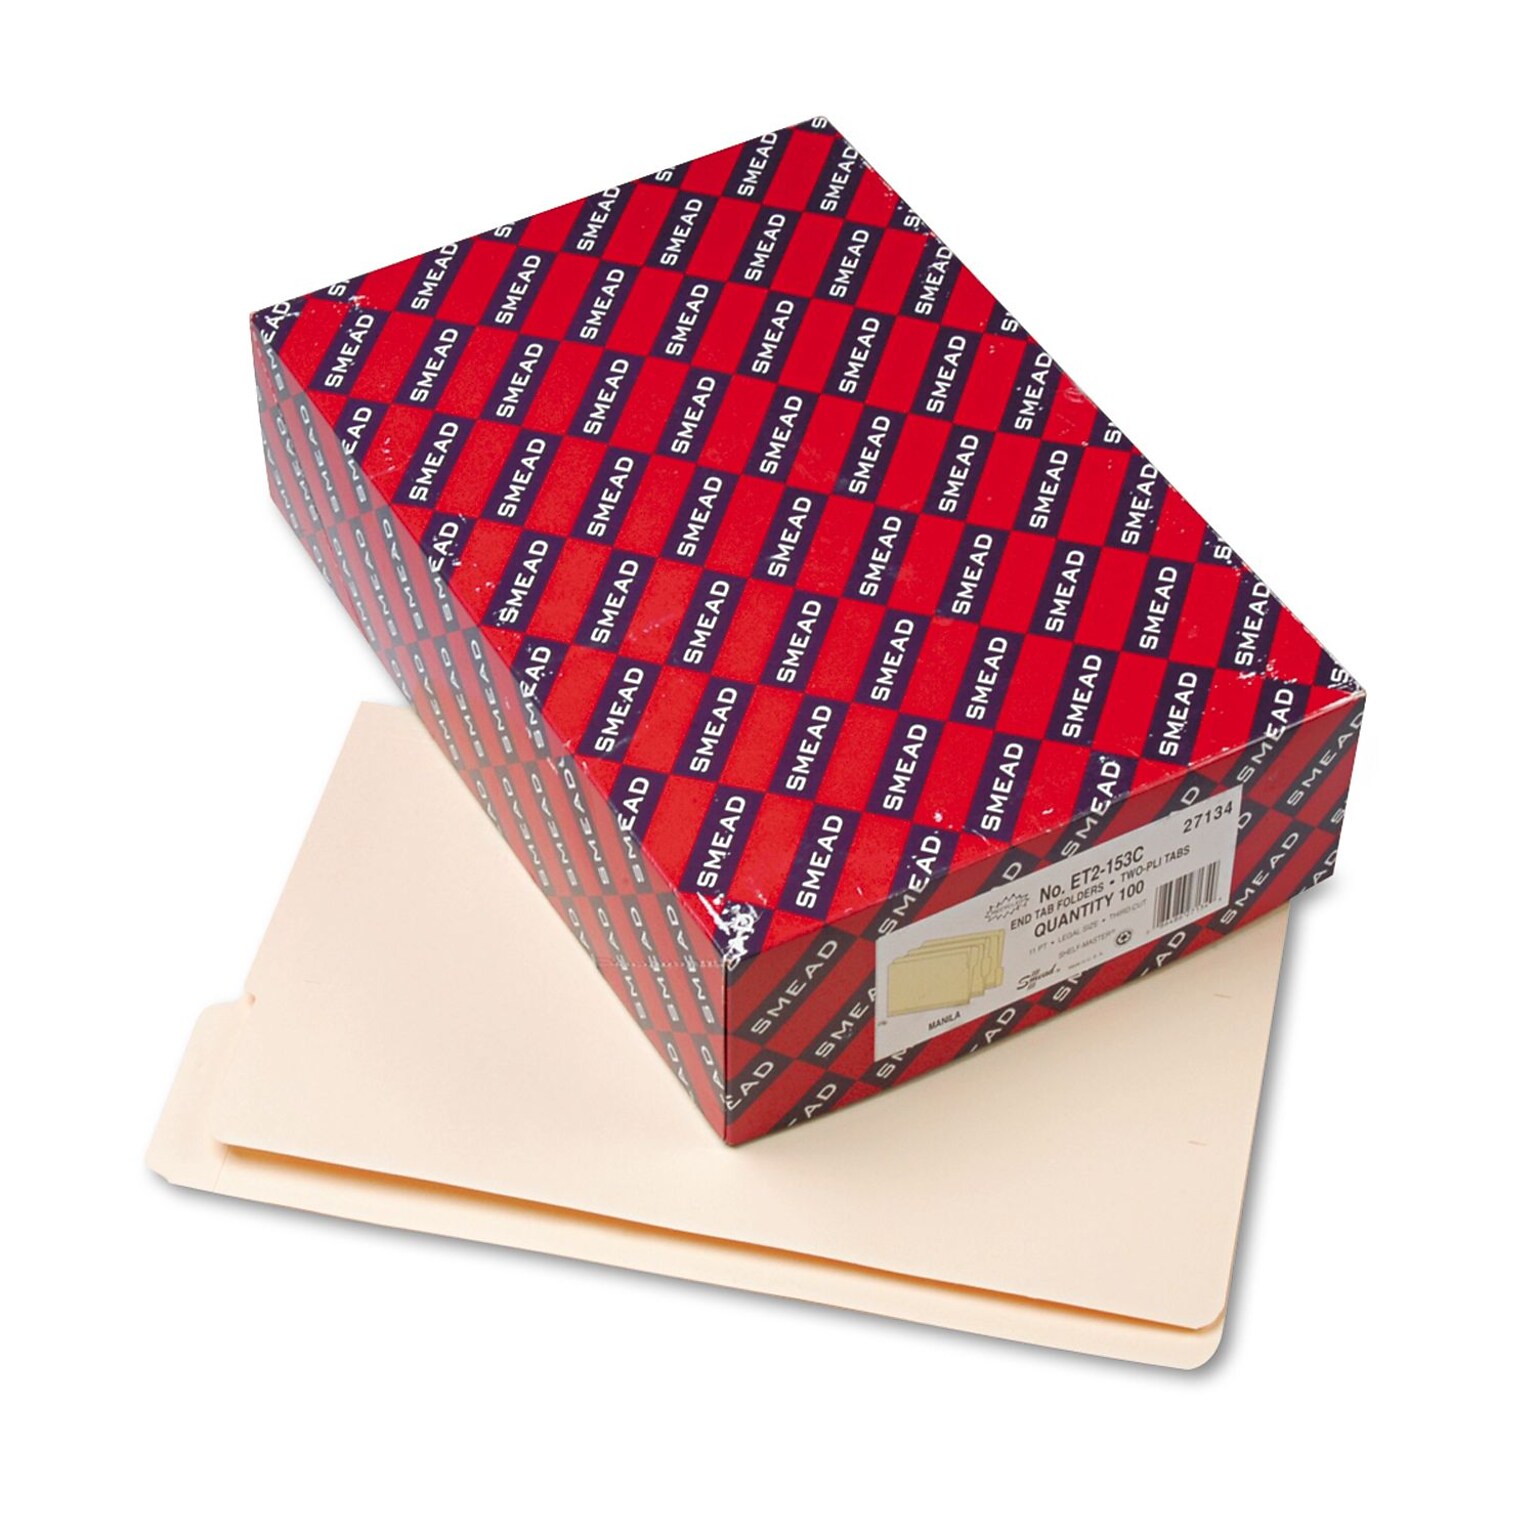 Smead Shelf-Master Reinforced End Tab File Folder, 1/3 Cut, Legal Size, Manila, 100/Box (27134)